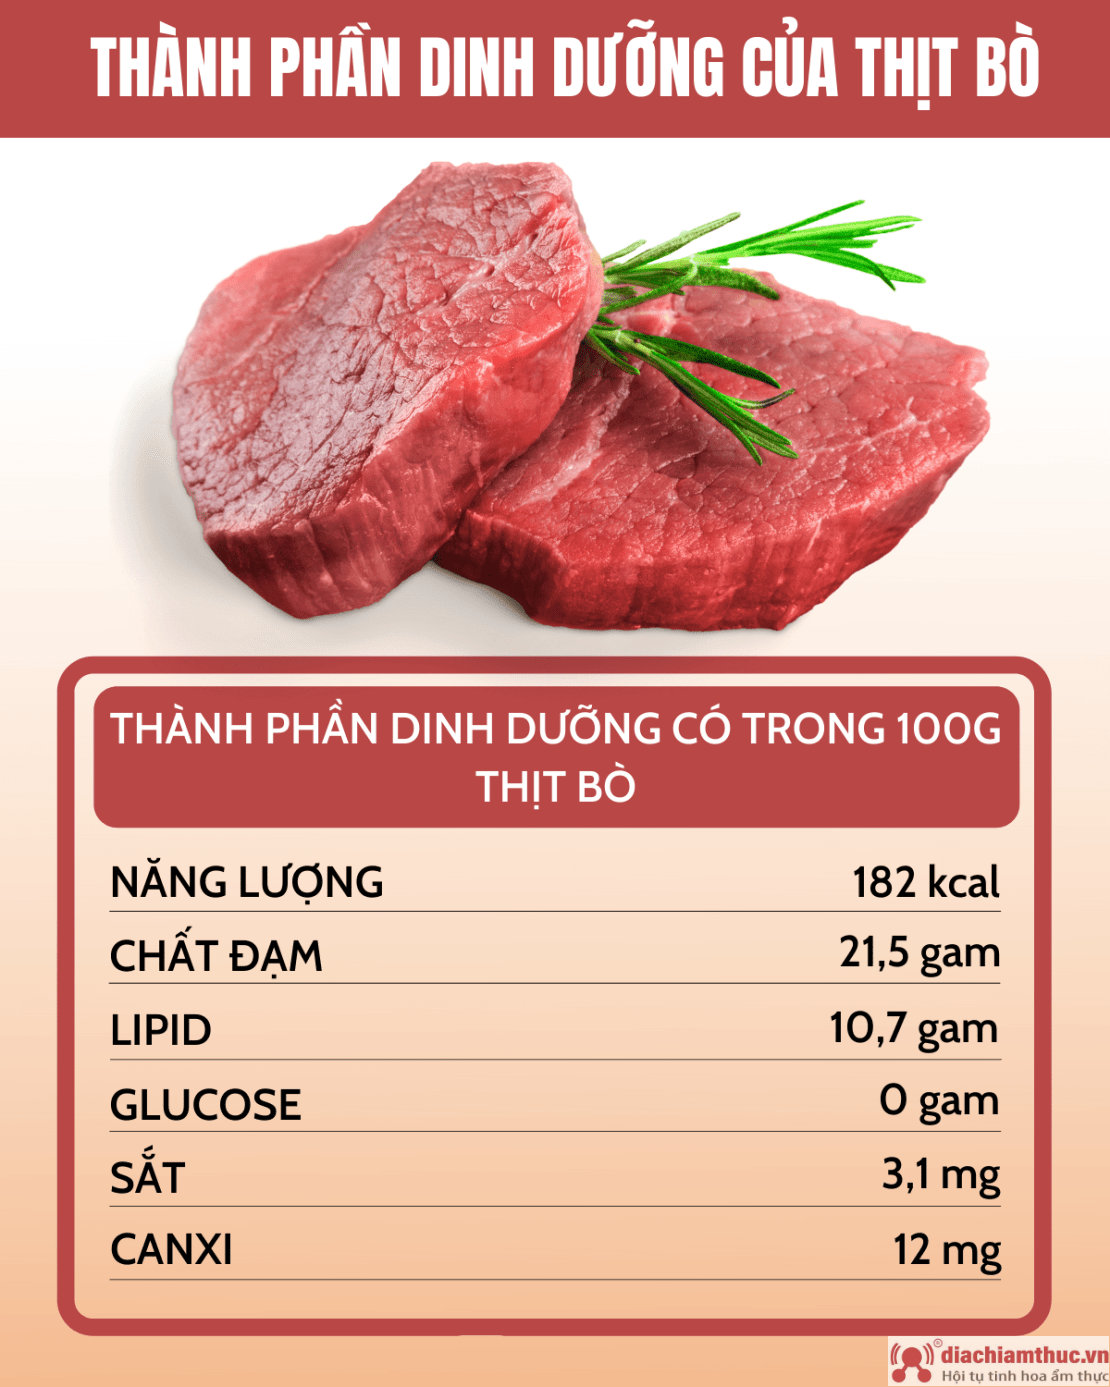 Sa kalori përmban një biftek?